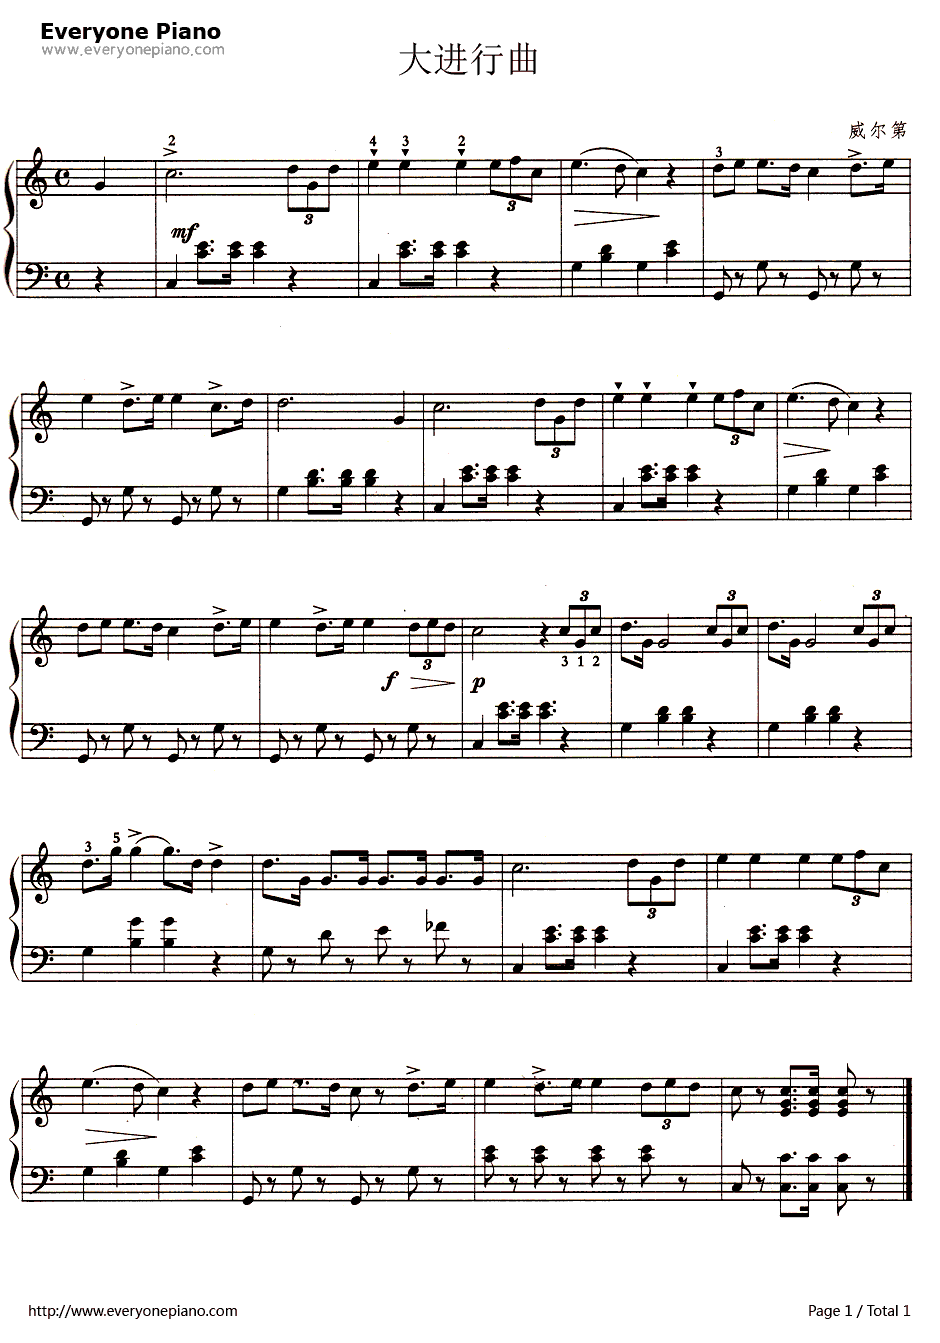 威尔第：凯旋进行曲(大进行曲)钢琴谱-居塞比·威尔第1